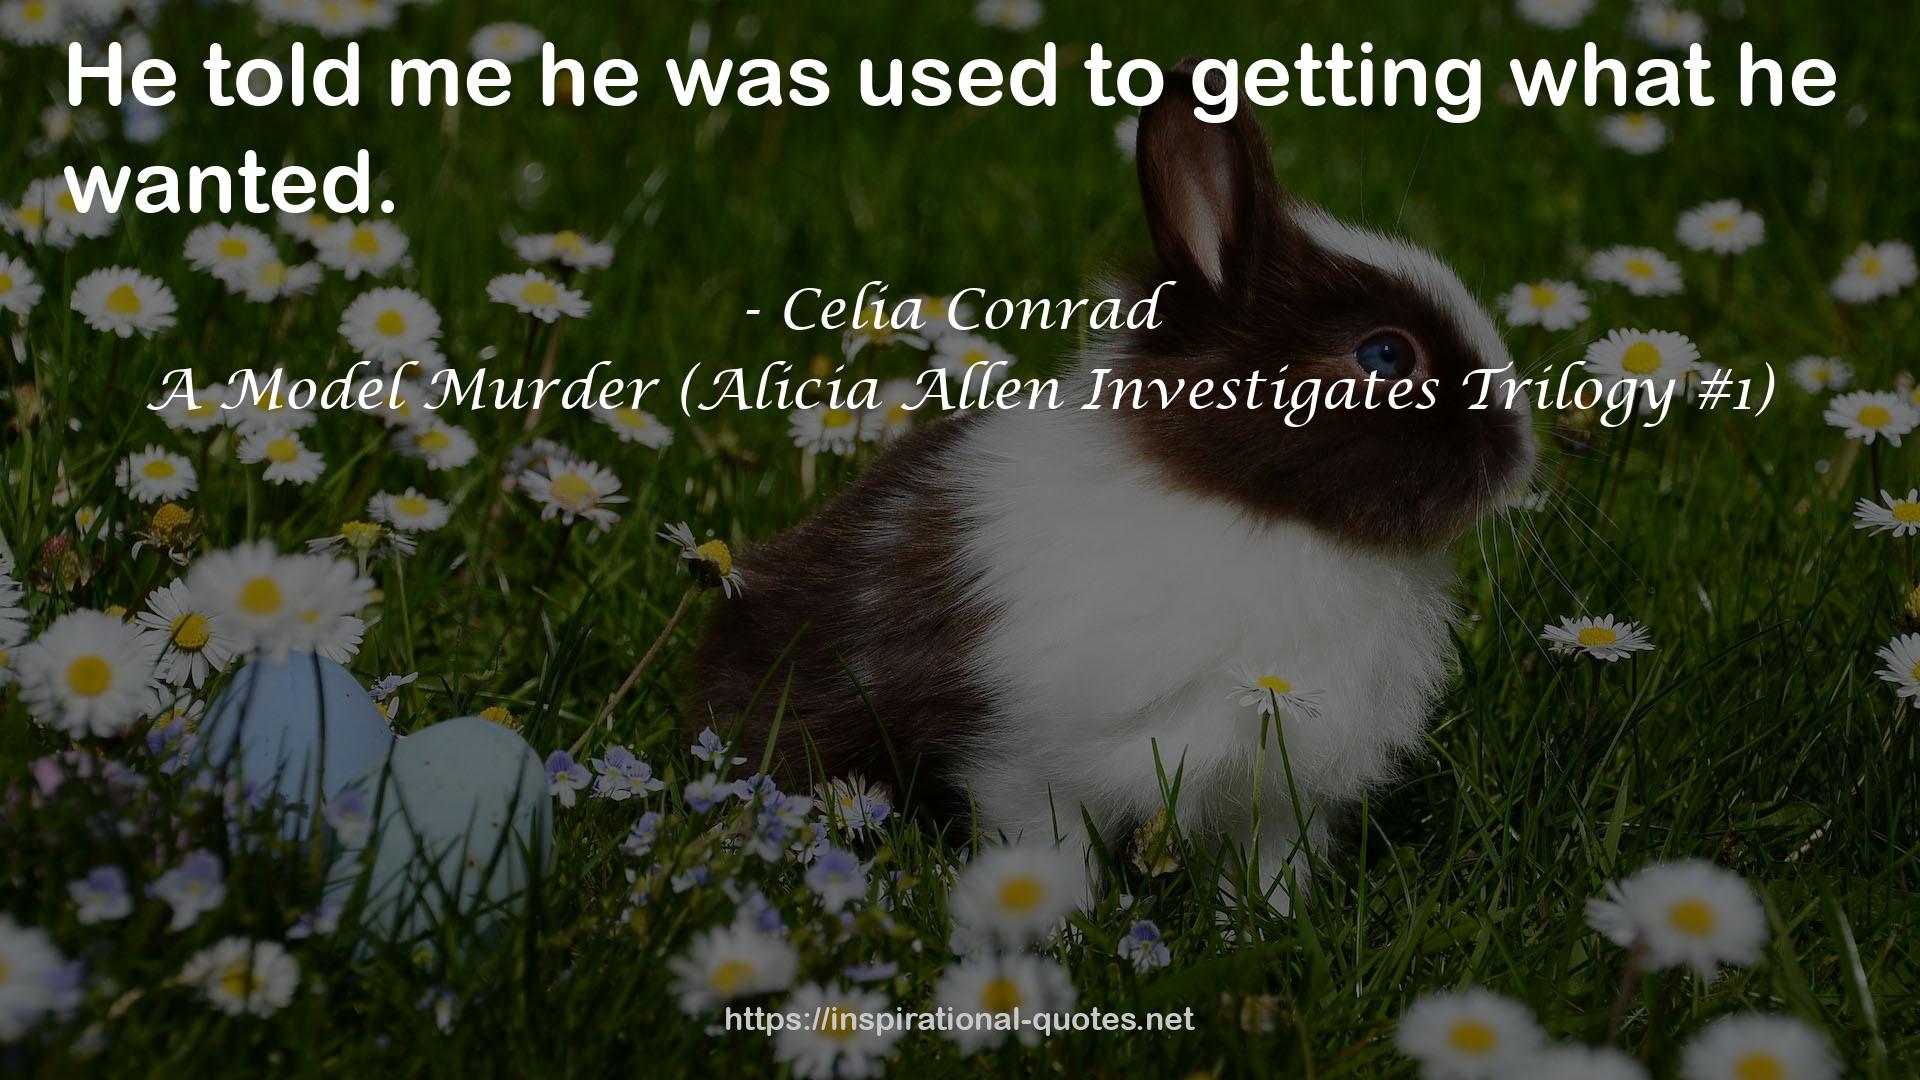 A Model Murder (Alicia Allen Investigates Trilogy #1) QUOTES